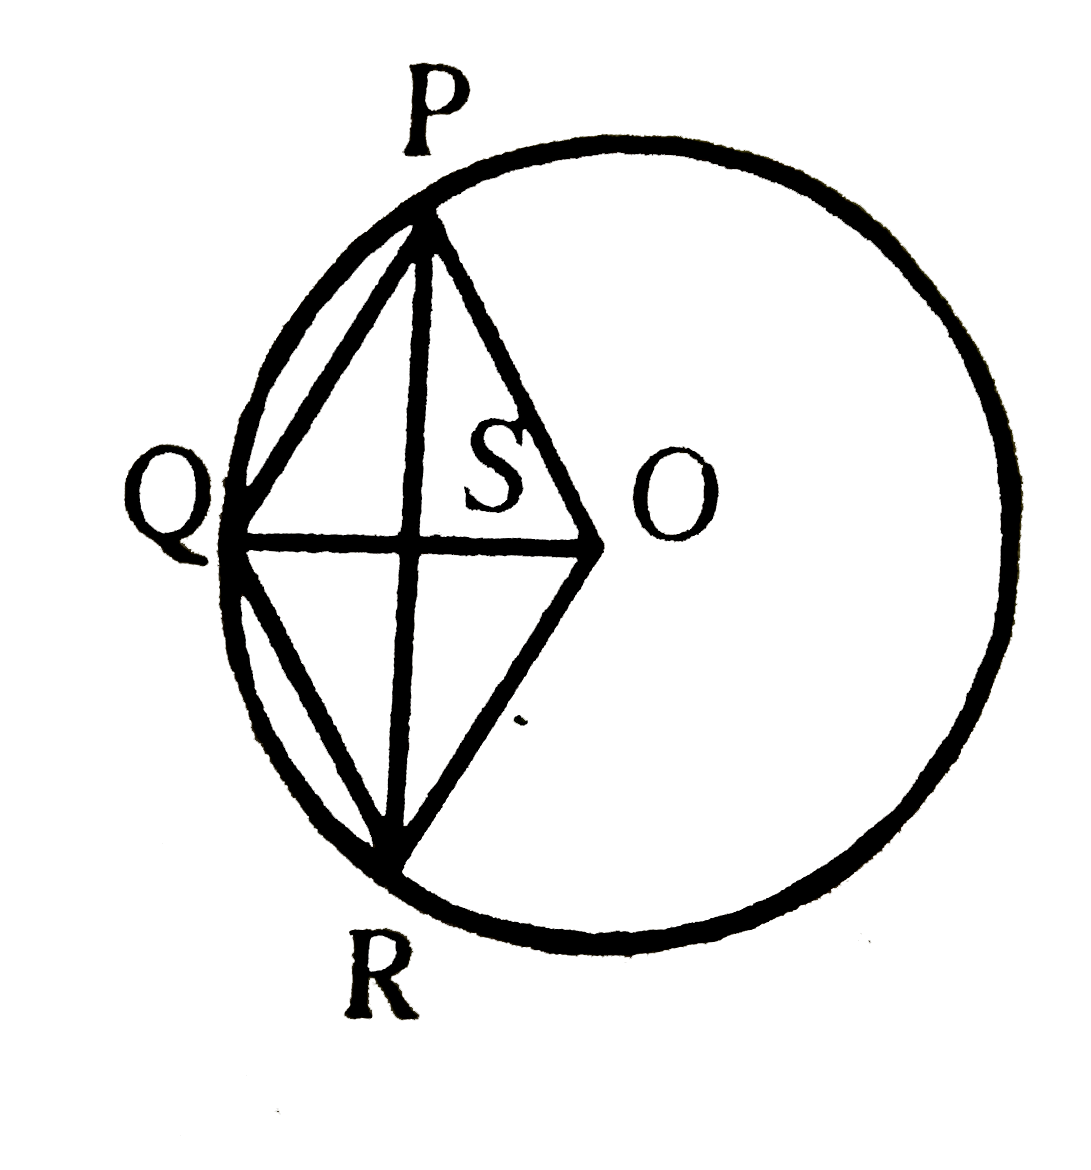 आकृति में OPQR एक समचतुर्भुज है जिसके तीन शीर्ष O केन्द्र वाले वृत्त पर स्थित हैं । यदि समचतुर्भुज का क्षेत्रफल 32sqrt(3) cm^(2)  हो तो वृत्त की त्रिज्या ज्ञात करें